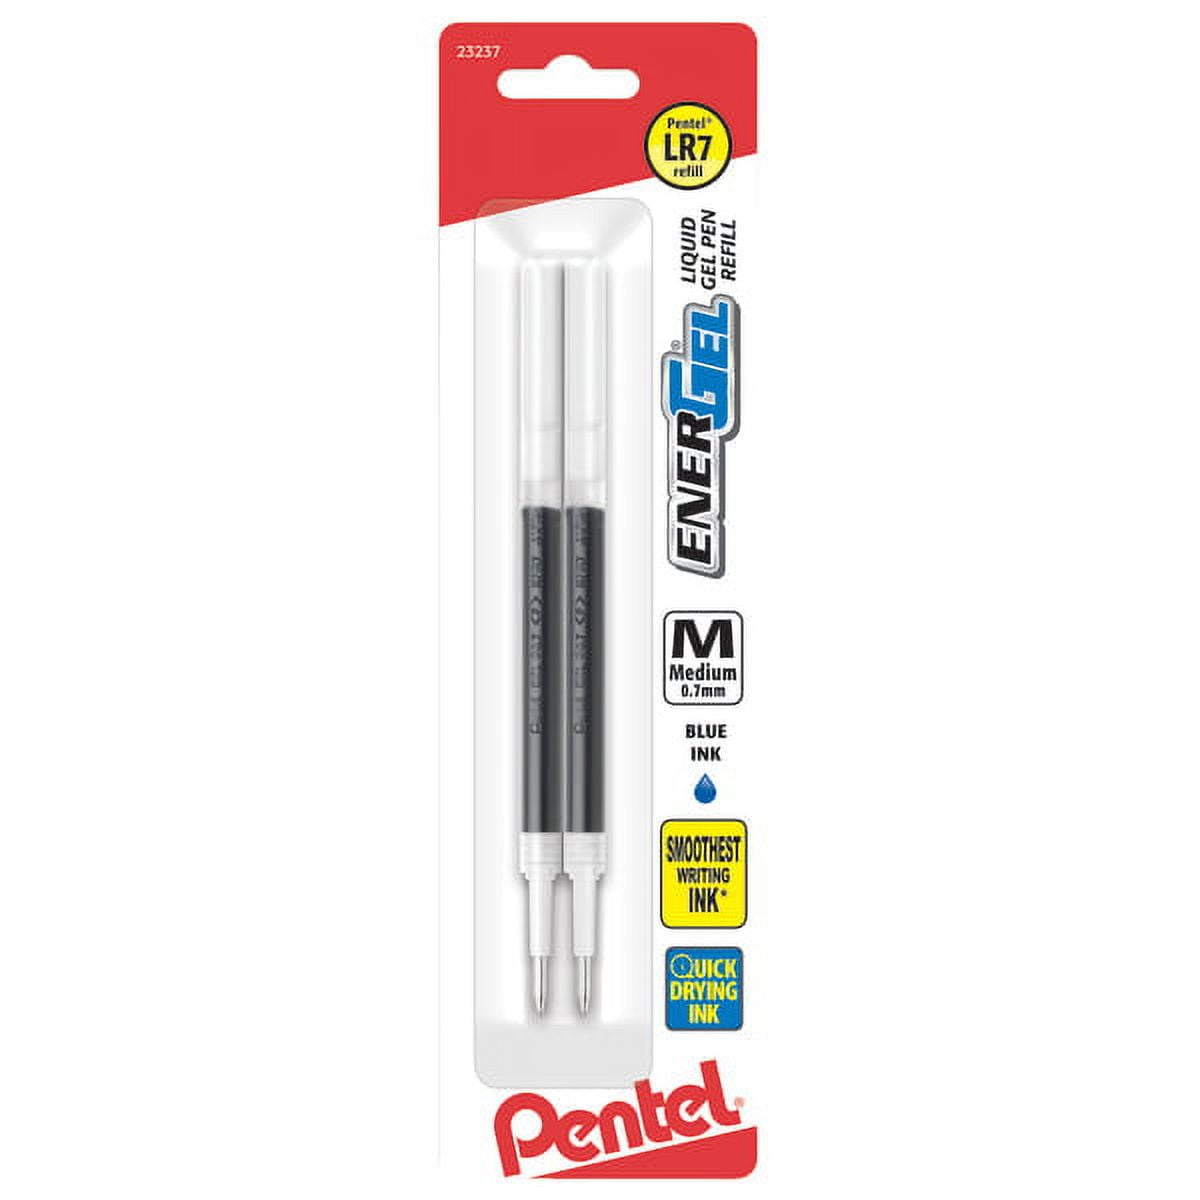 Pentel R.S.V.P. Ballpoint Pen, Medium Line, Assorted Ink, 6 Pack (bk91bp6m)